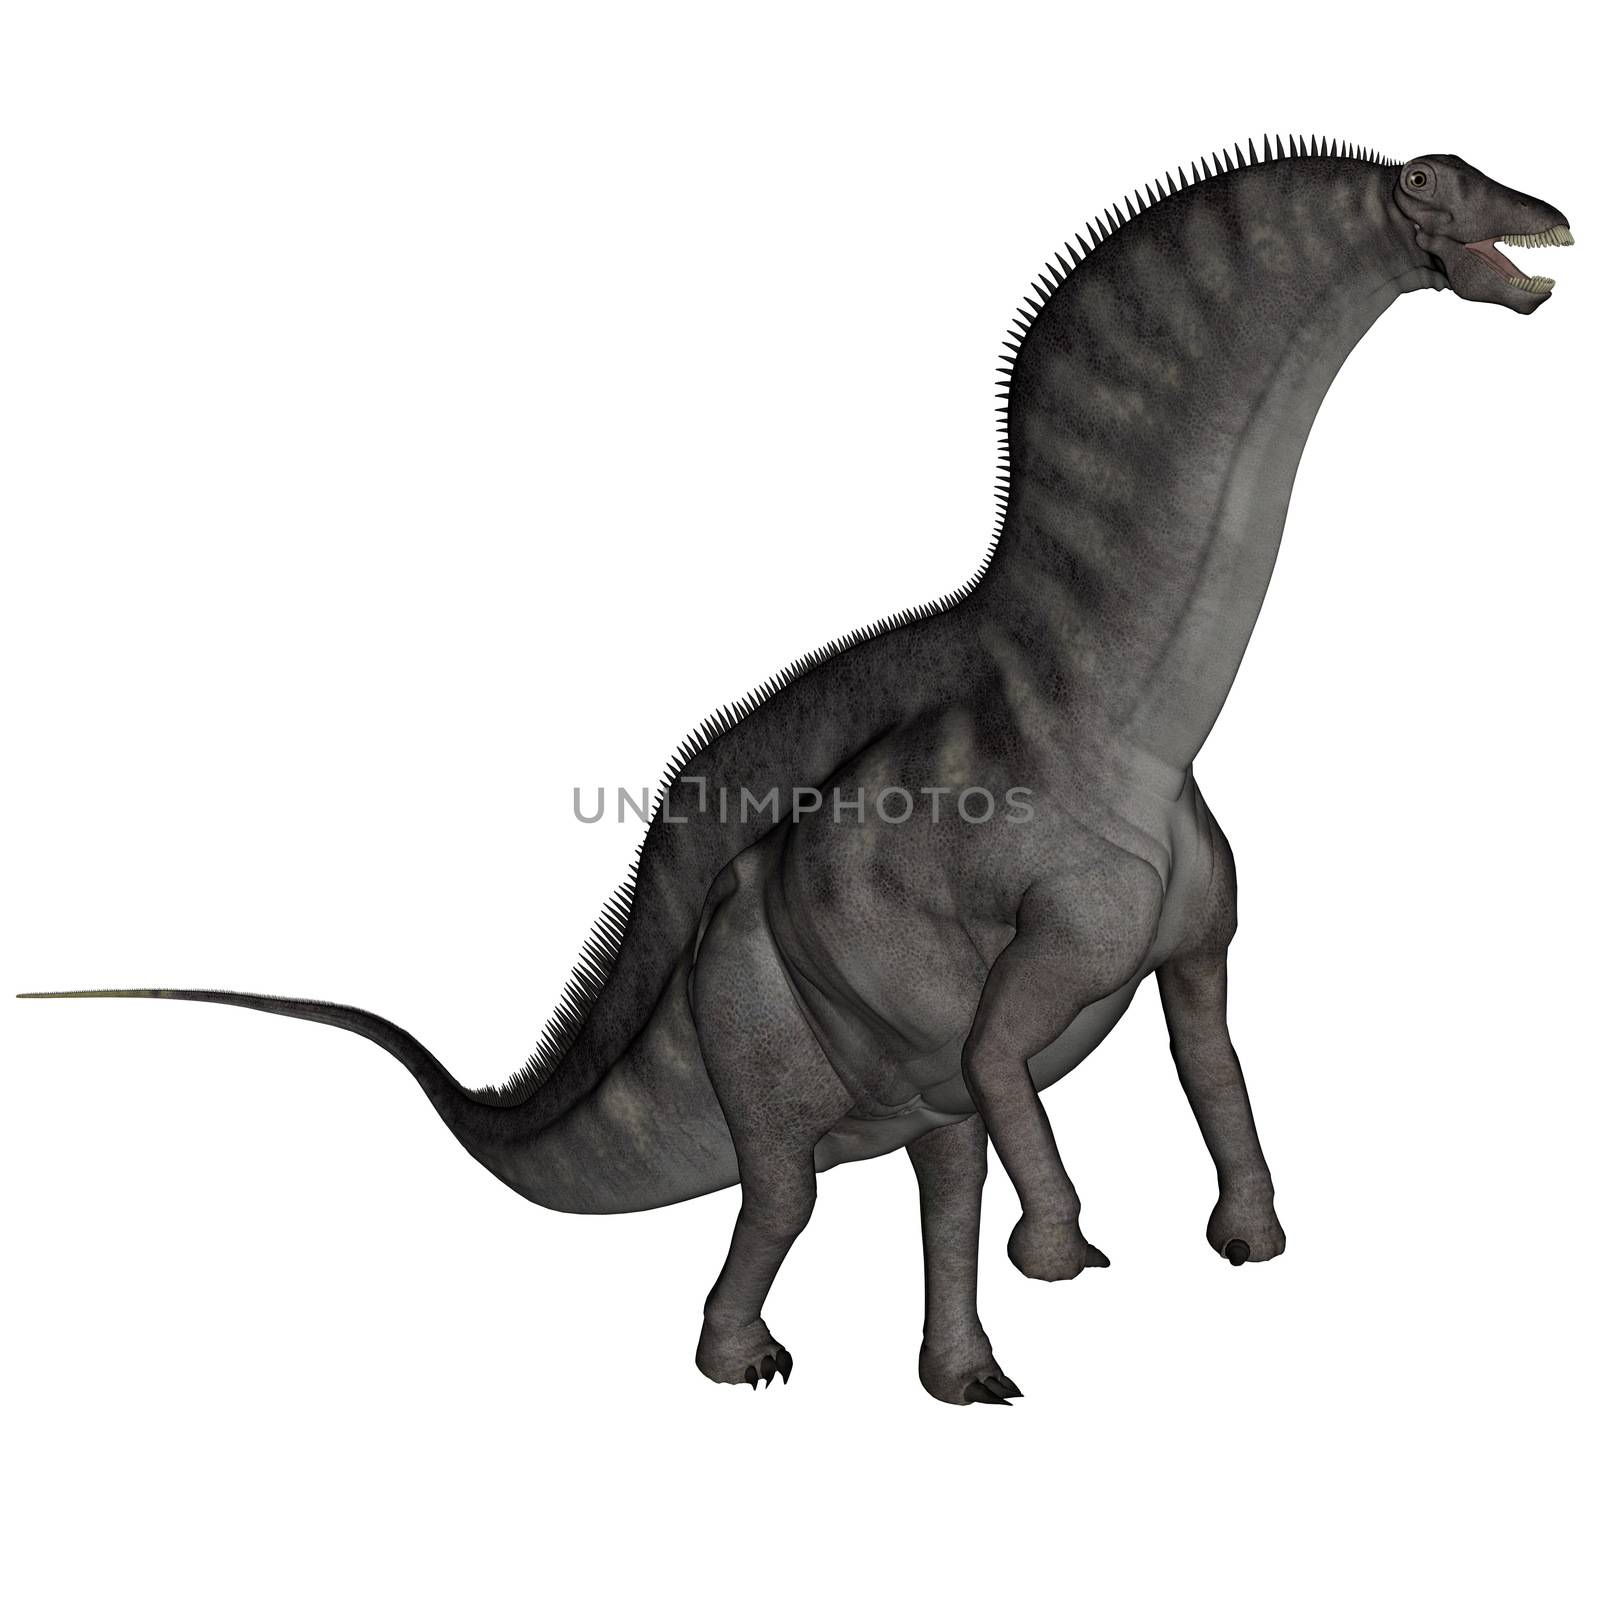 Amargasaurus dinosaur - 3D render by Elenaphotos21